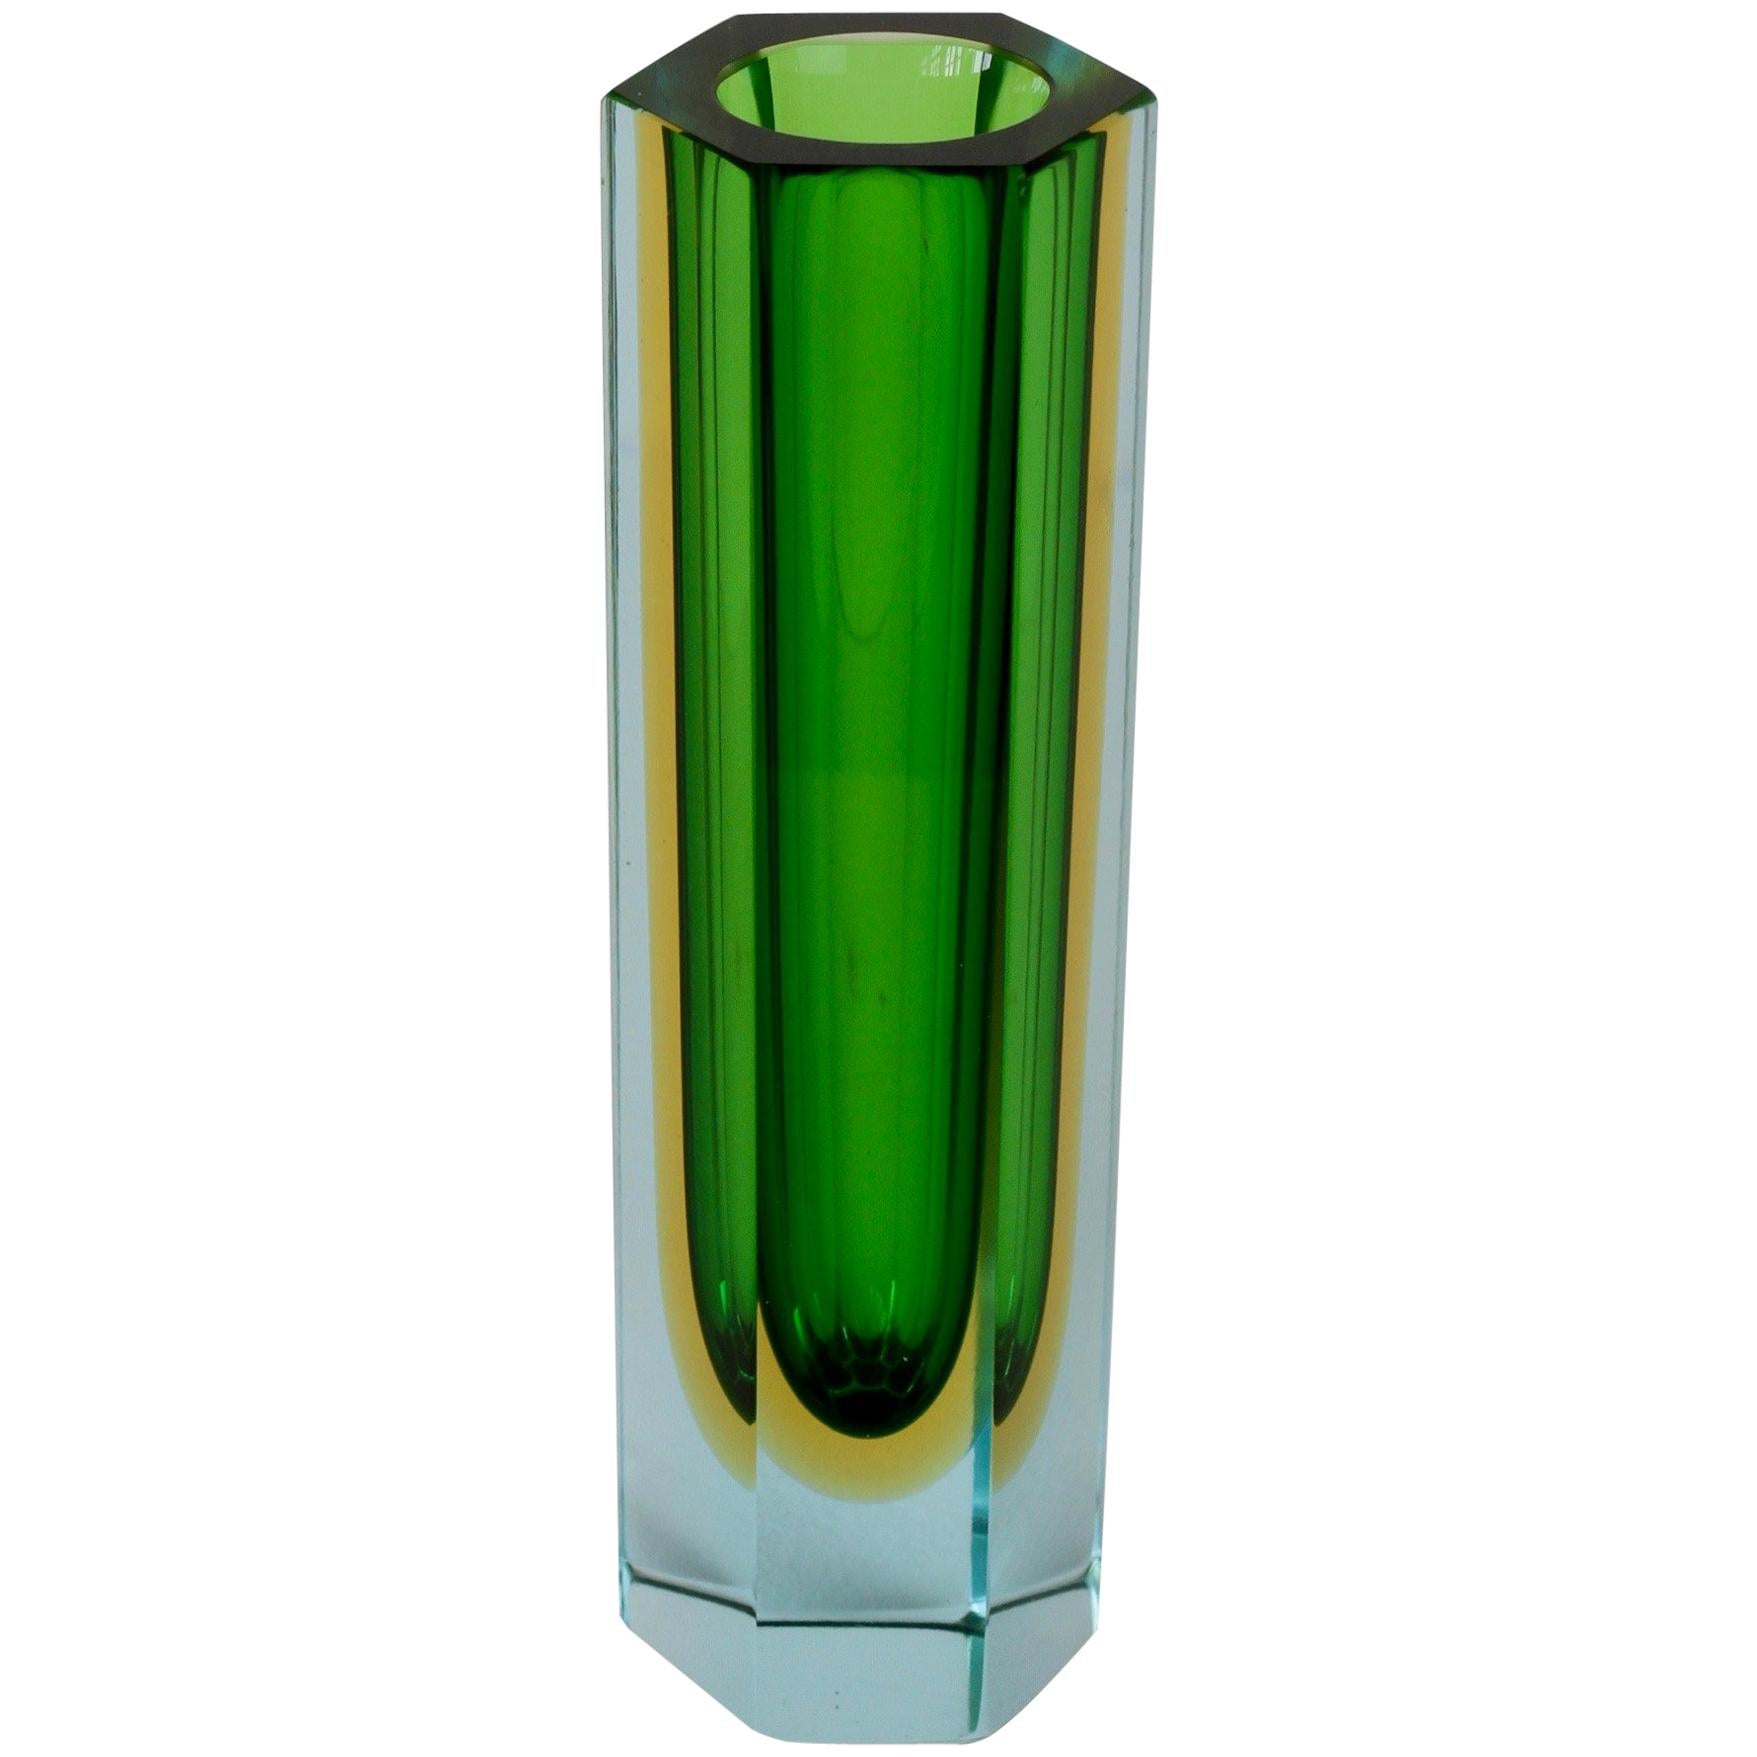 Faceted Murano 'Sommerso' Glass Vase Attributed to Mandruzzato, circa 1960-1969